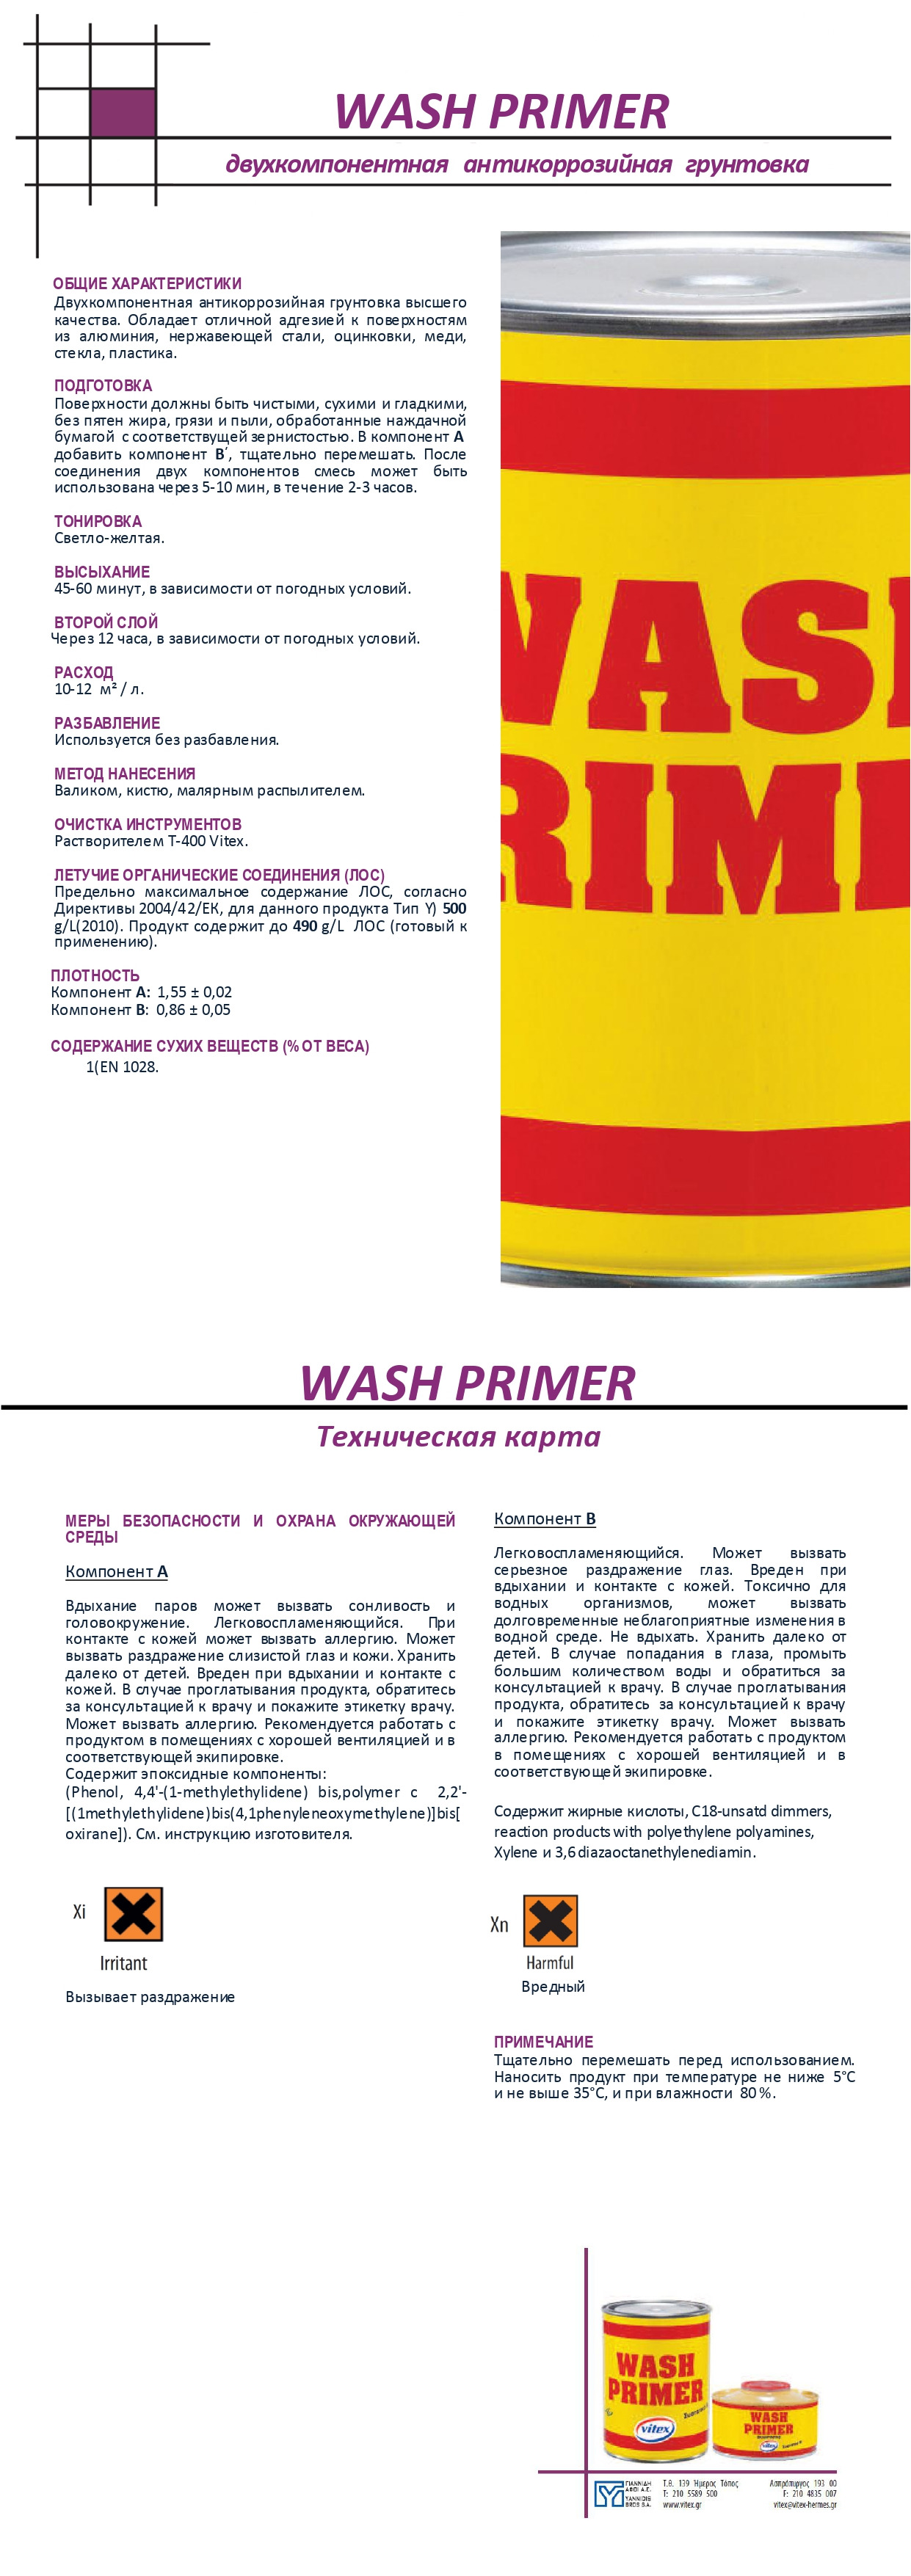 Wash Primer info